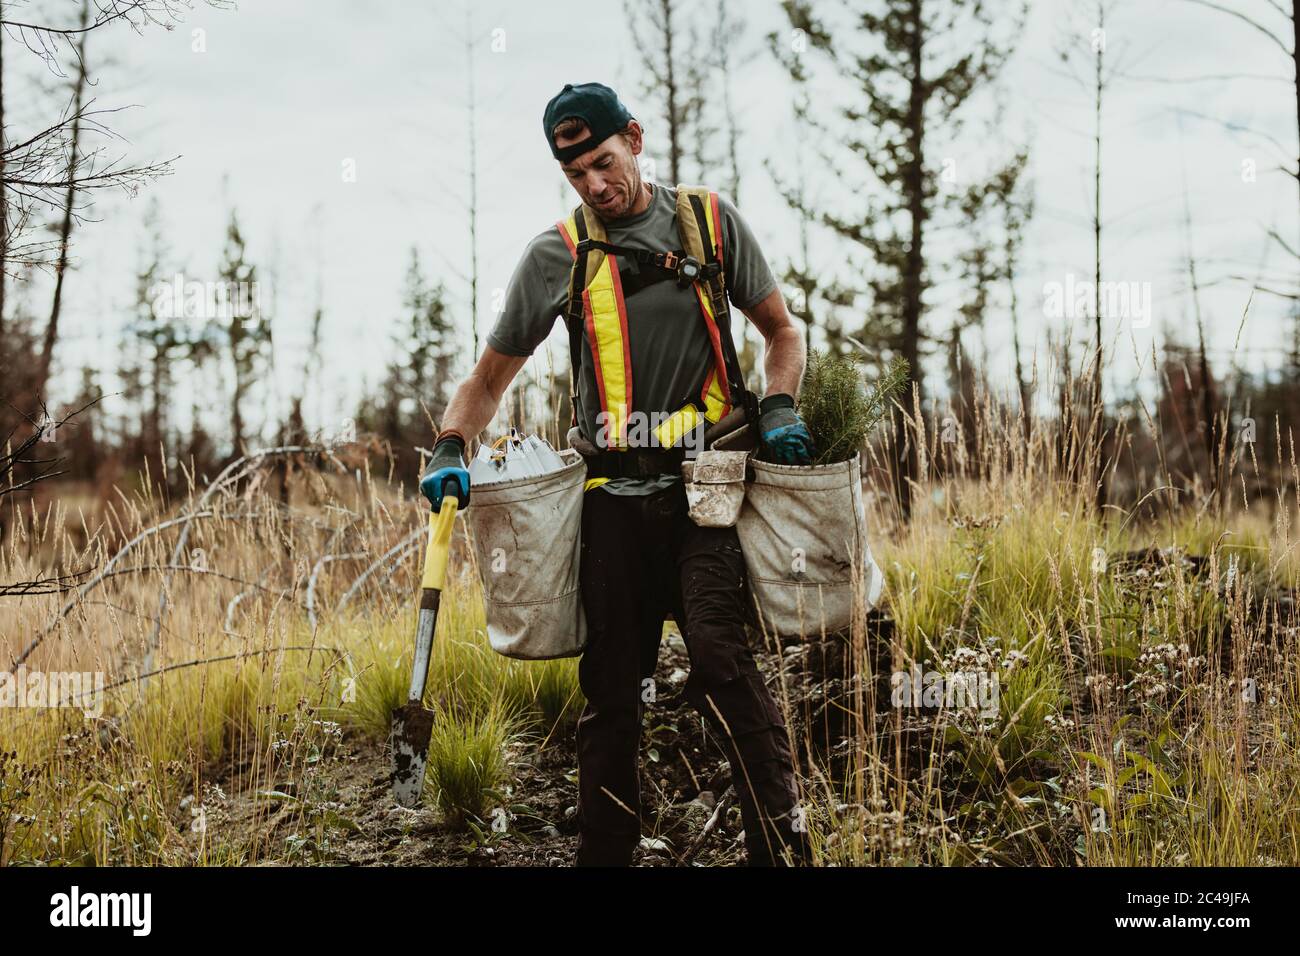 Uomo che pianta alberi in foresta usando pala. Forestere maschio piantando piantine in area deforested. Foto Stock